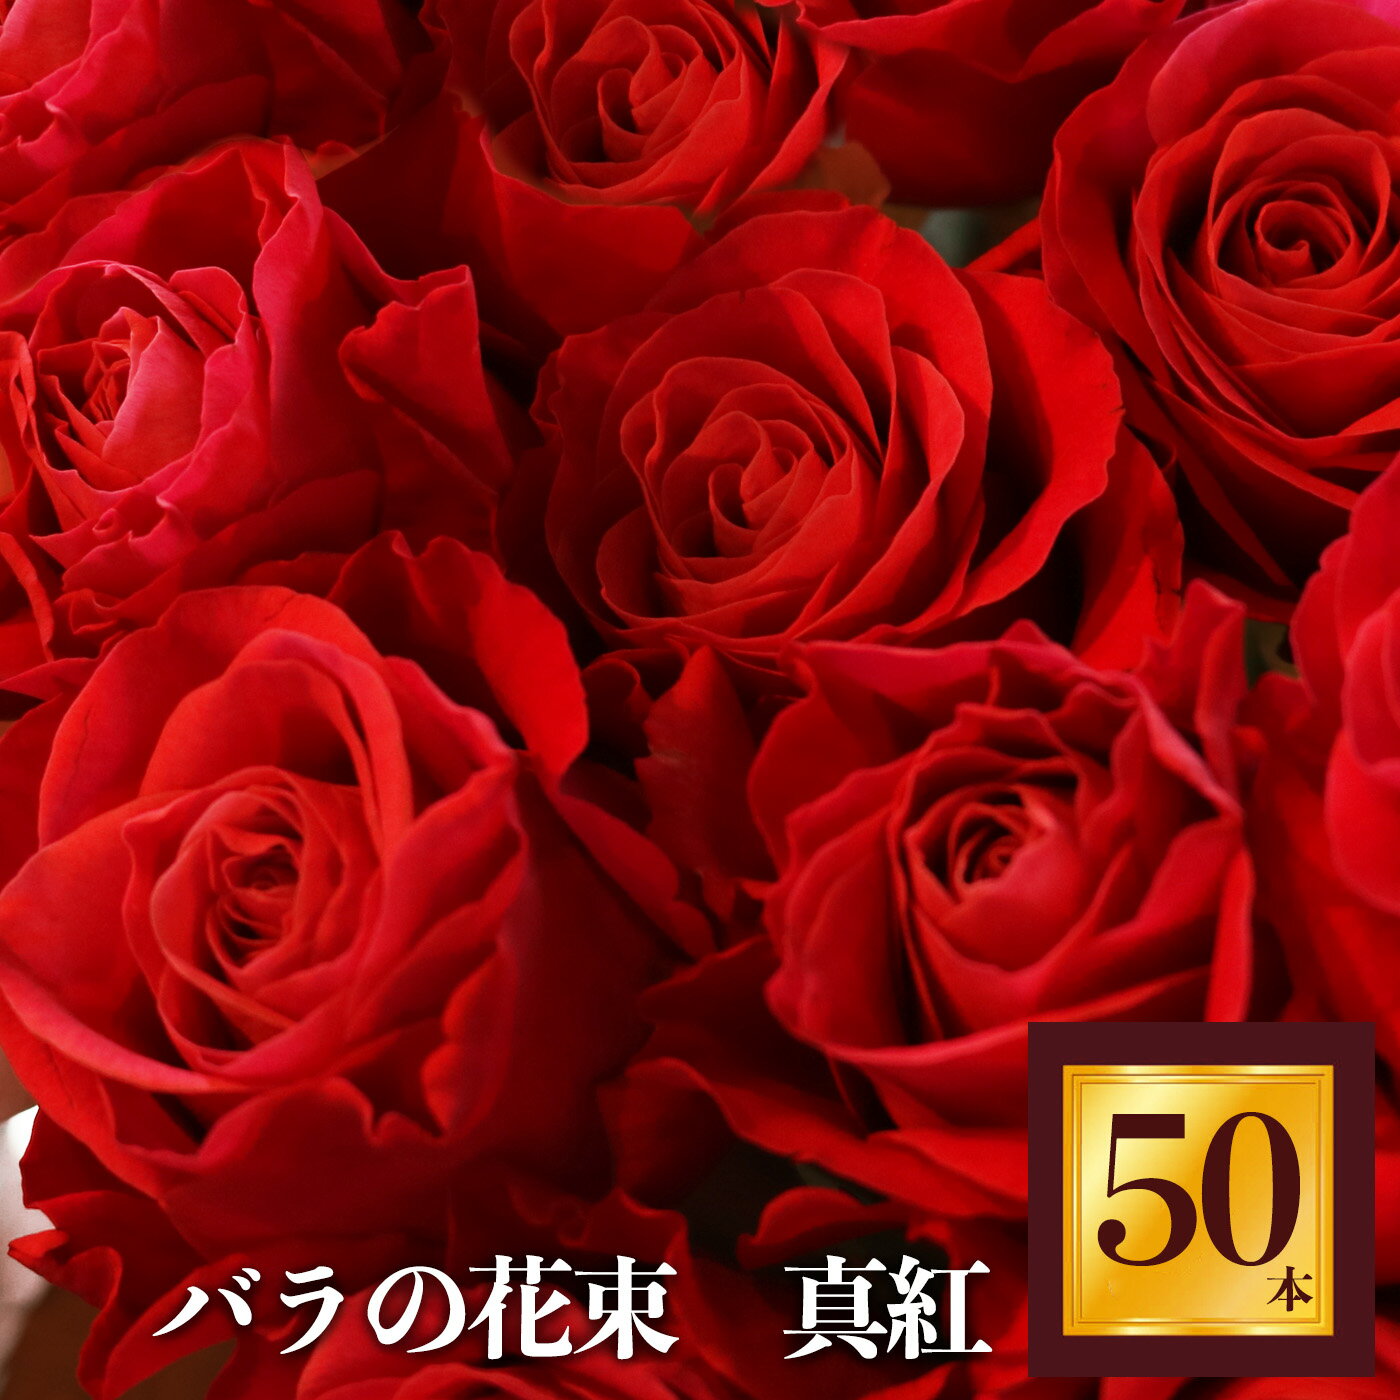 【ふるさと納税】Heguri Rose バラの花束 （赤バラ 50本）ローズ フラワー 薔薇 新鮮 高品質 豪華 真紅のバラ 綺麗 平群のバラ 花束 平群ブランド 誕生日 記念日 お祝い